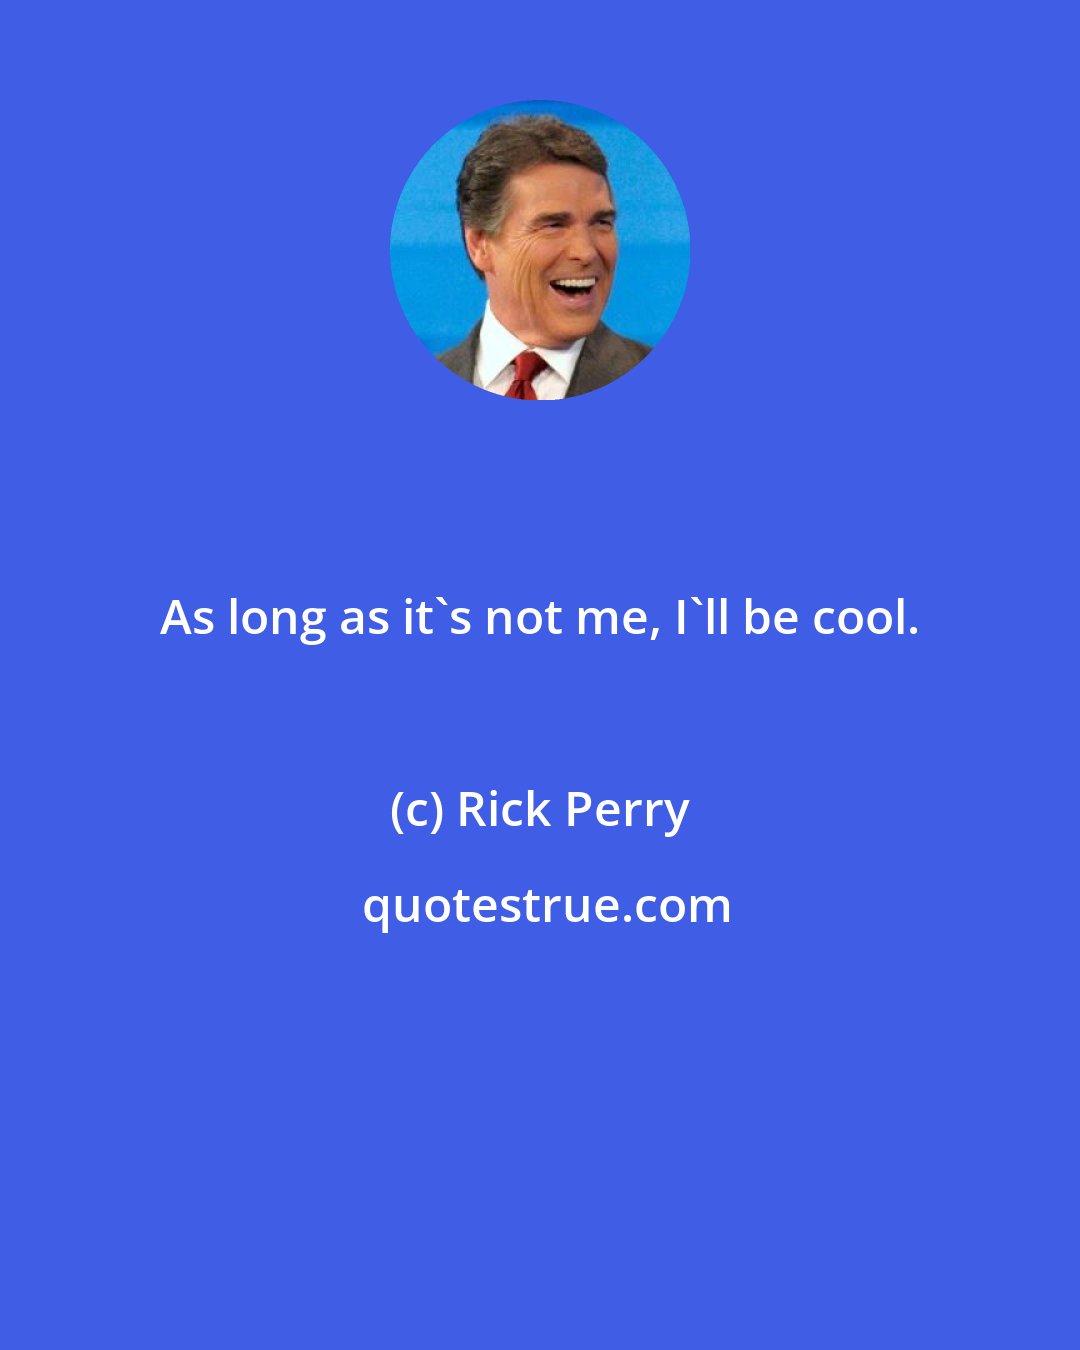 Rick Perry: As long as it's not me, I'll be cool.